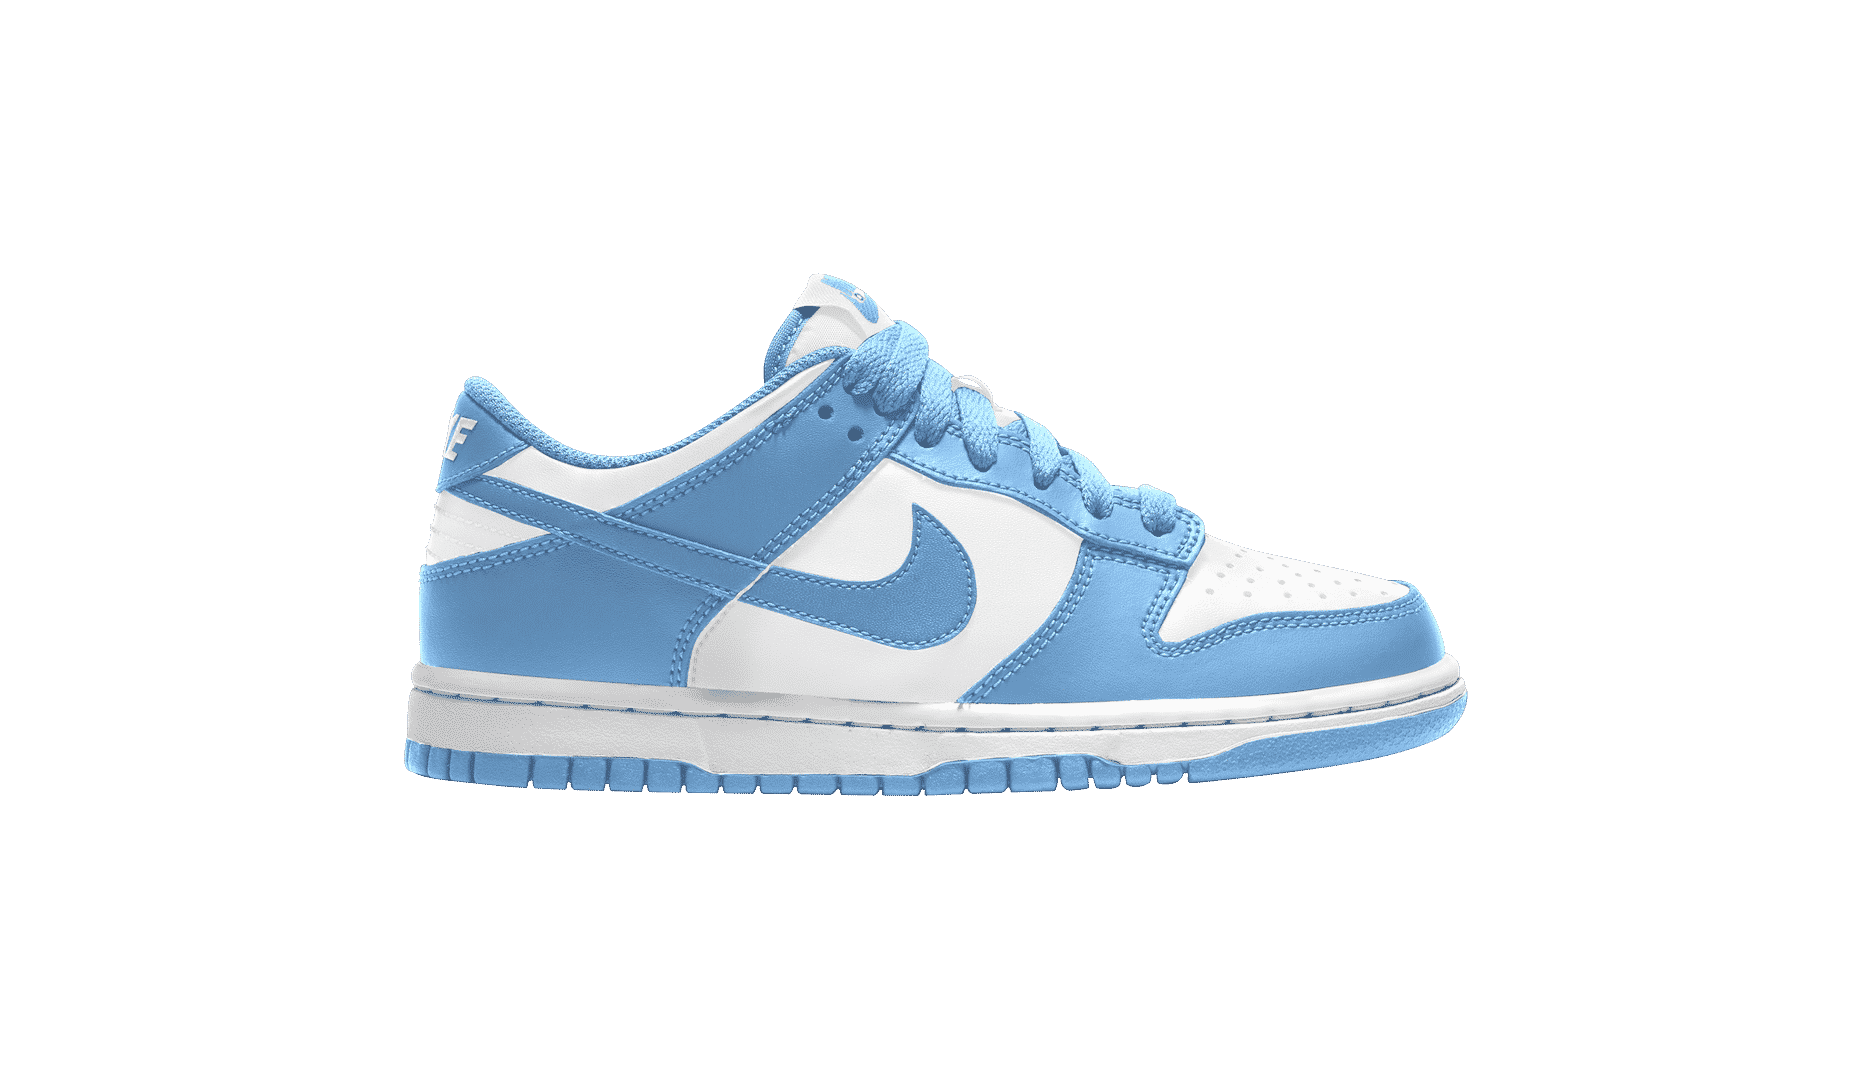 Preview: Nike Dunk Low "University Blue" - Le Site de la Sneaker